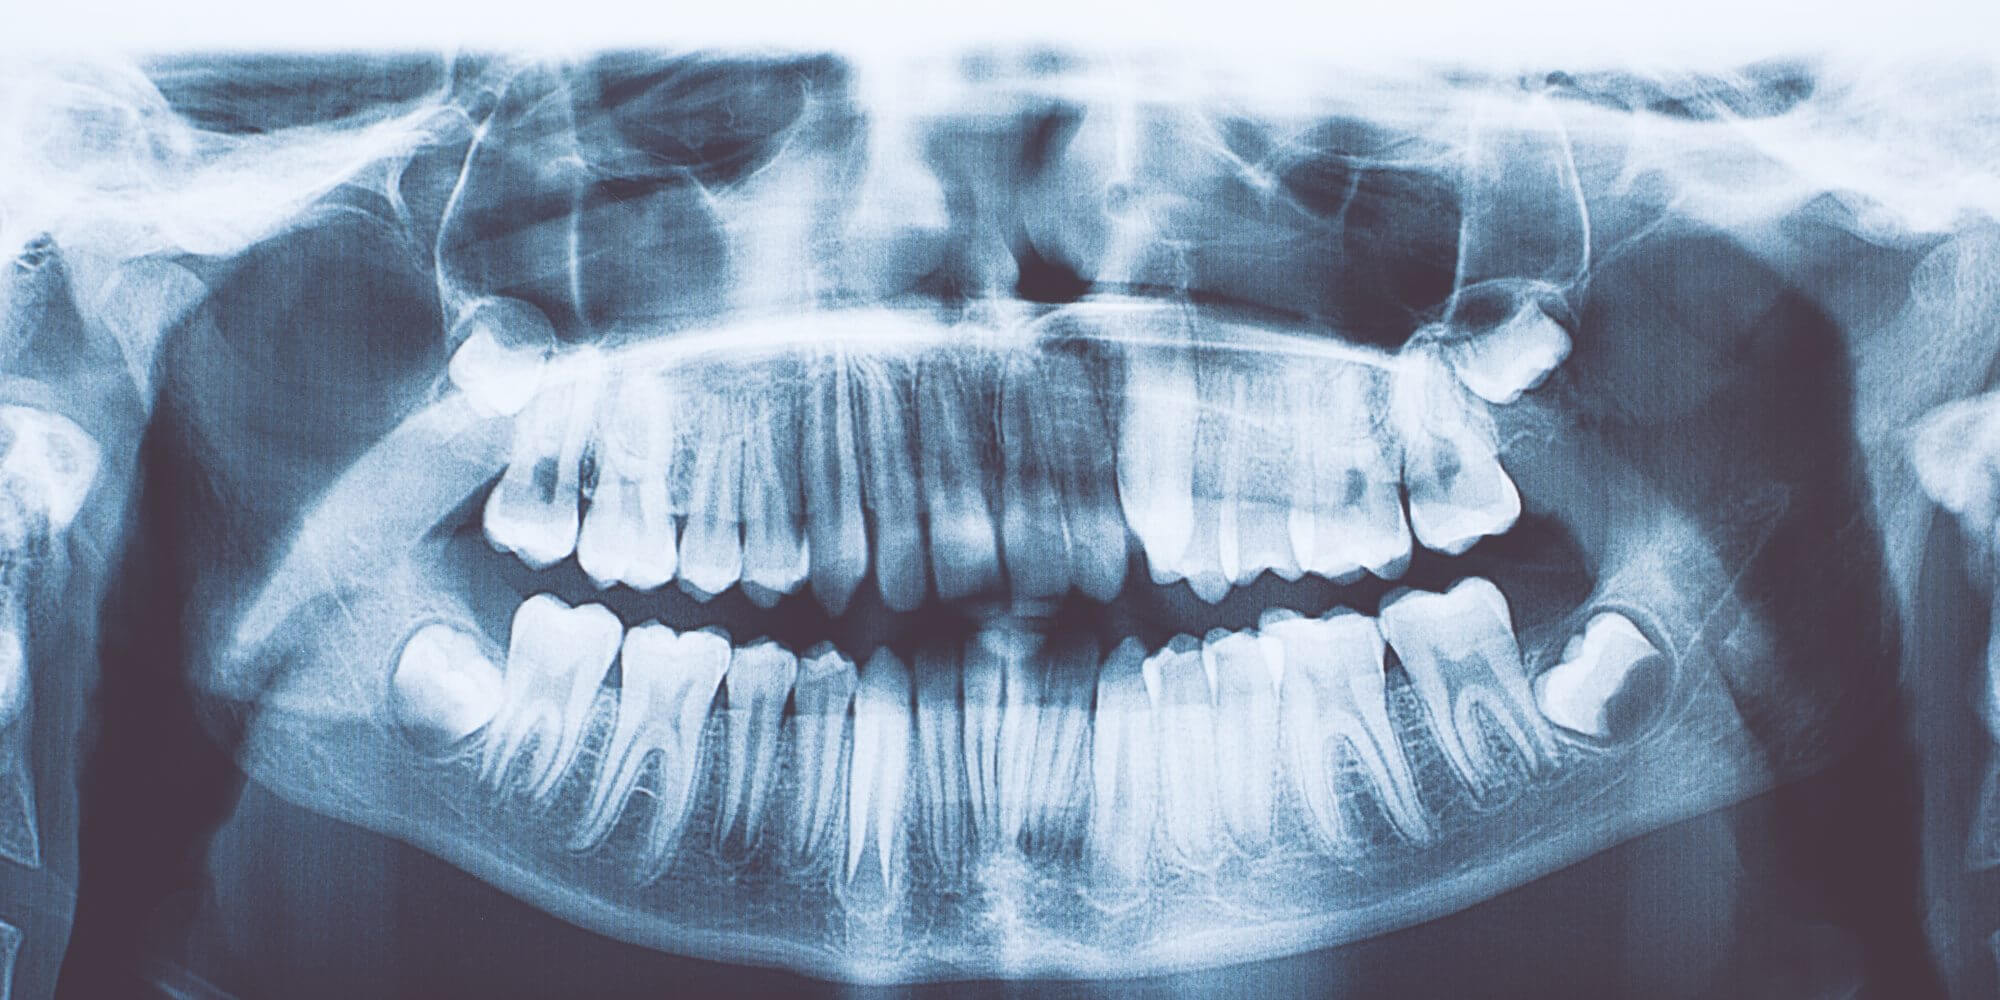 Indien garçon trouvé 526 excès des dents. Quelle est cette maladie?